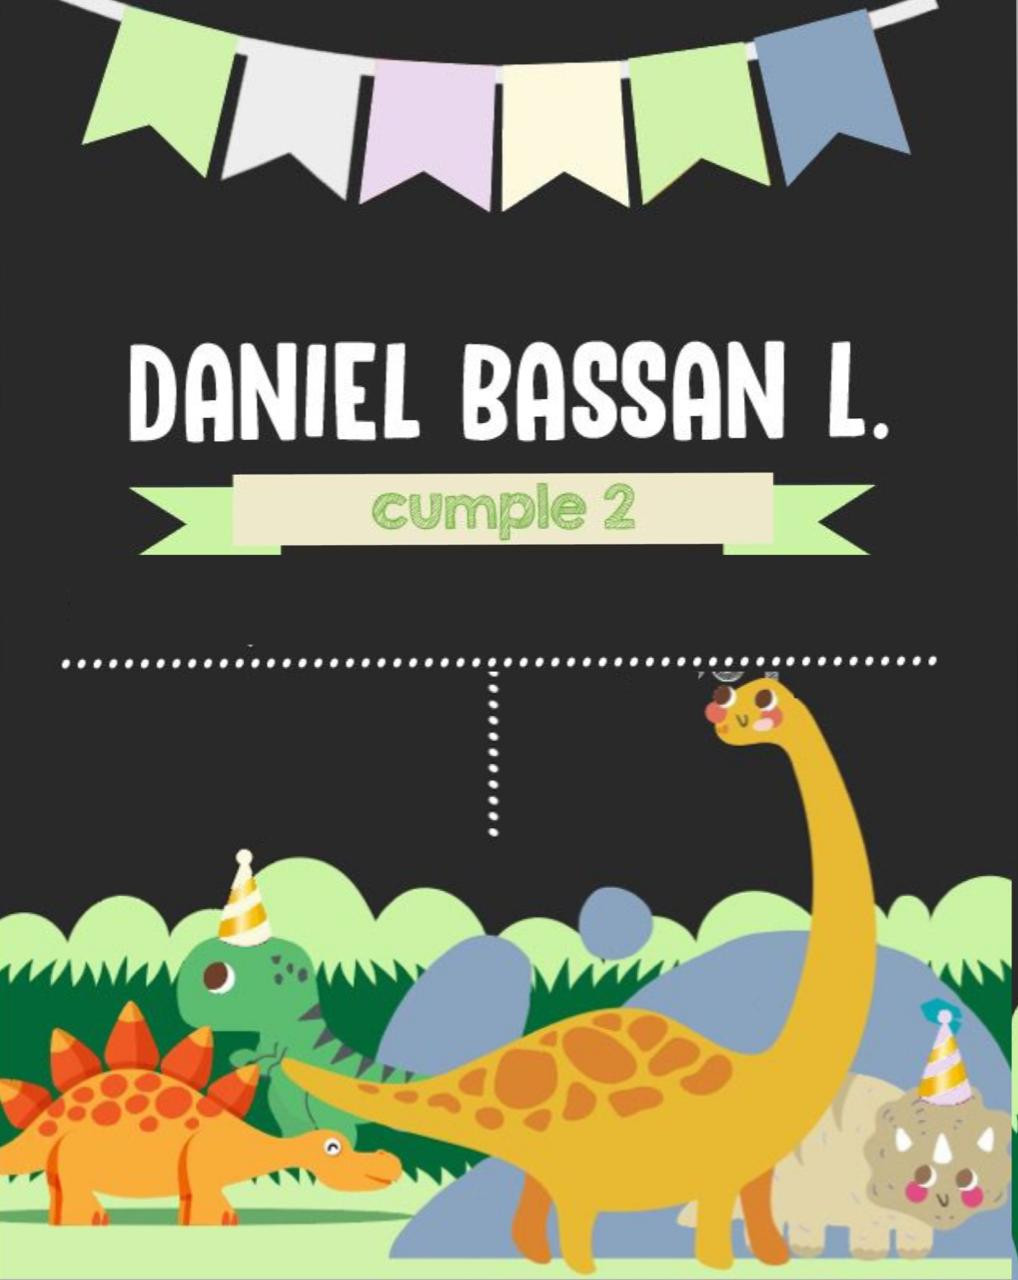 Daniel’s Birthday